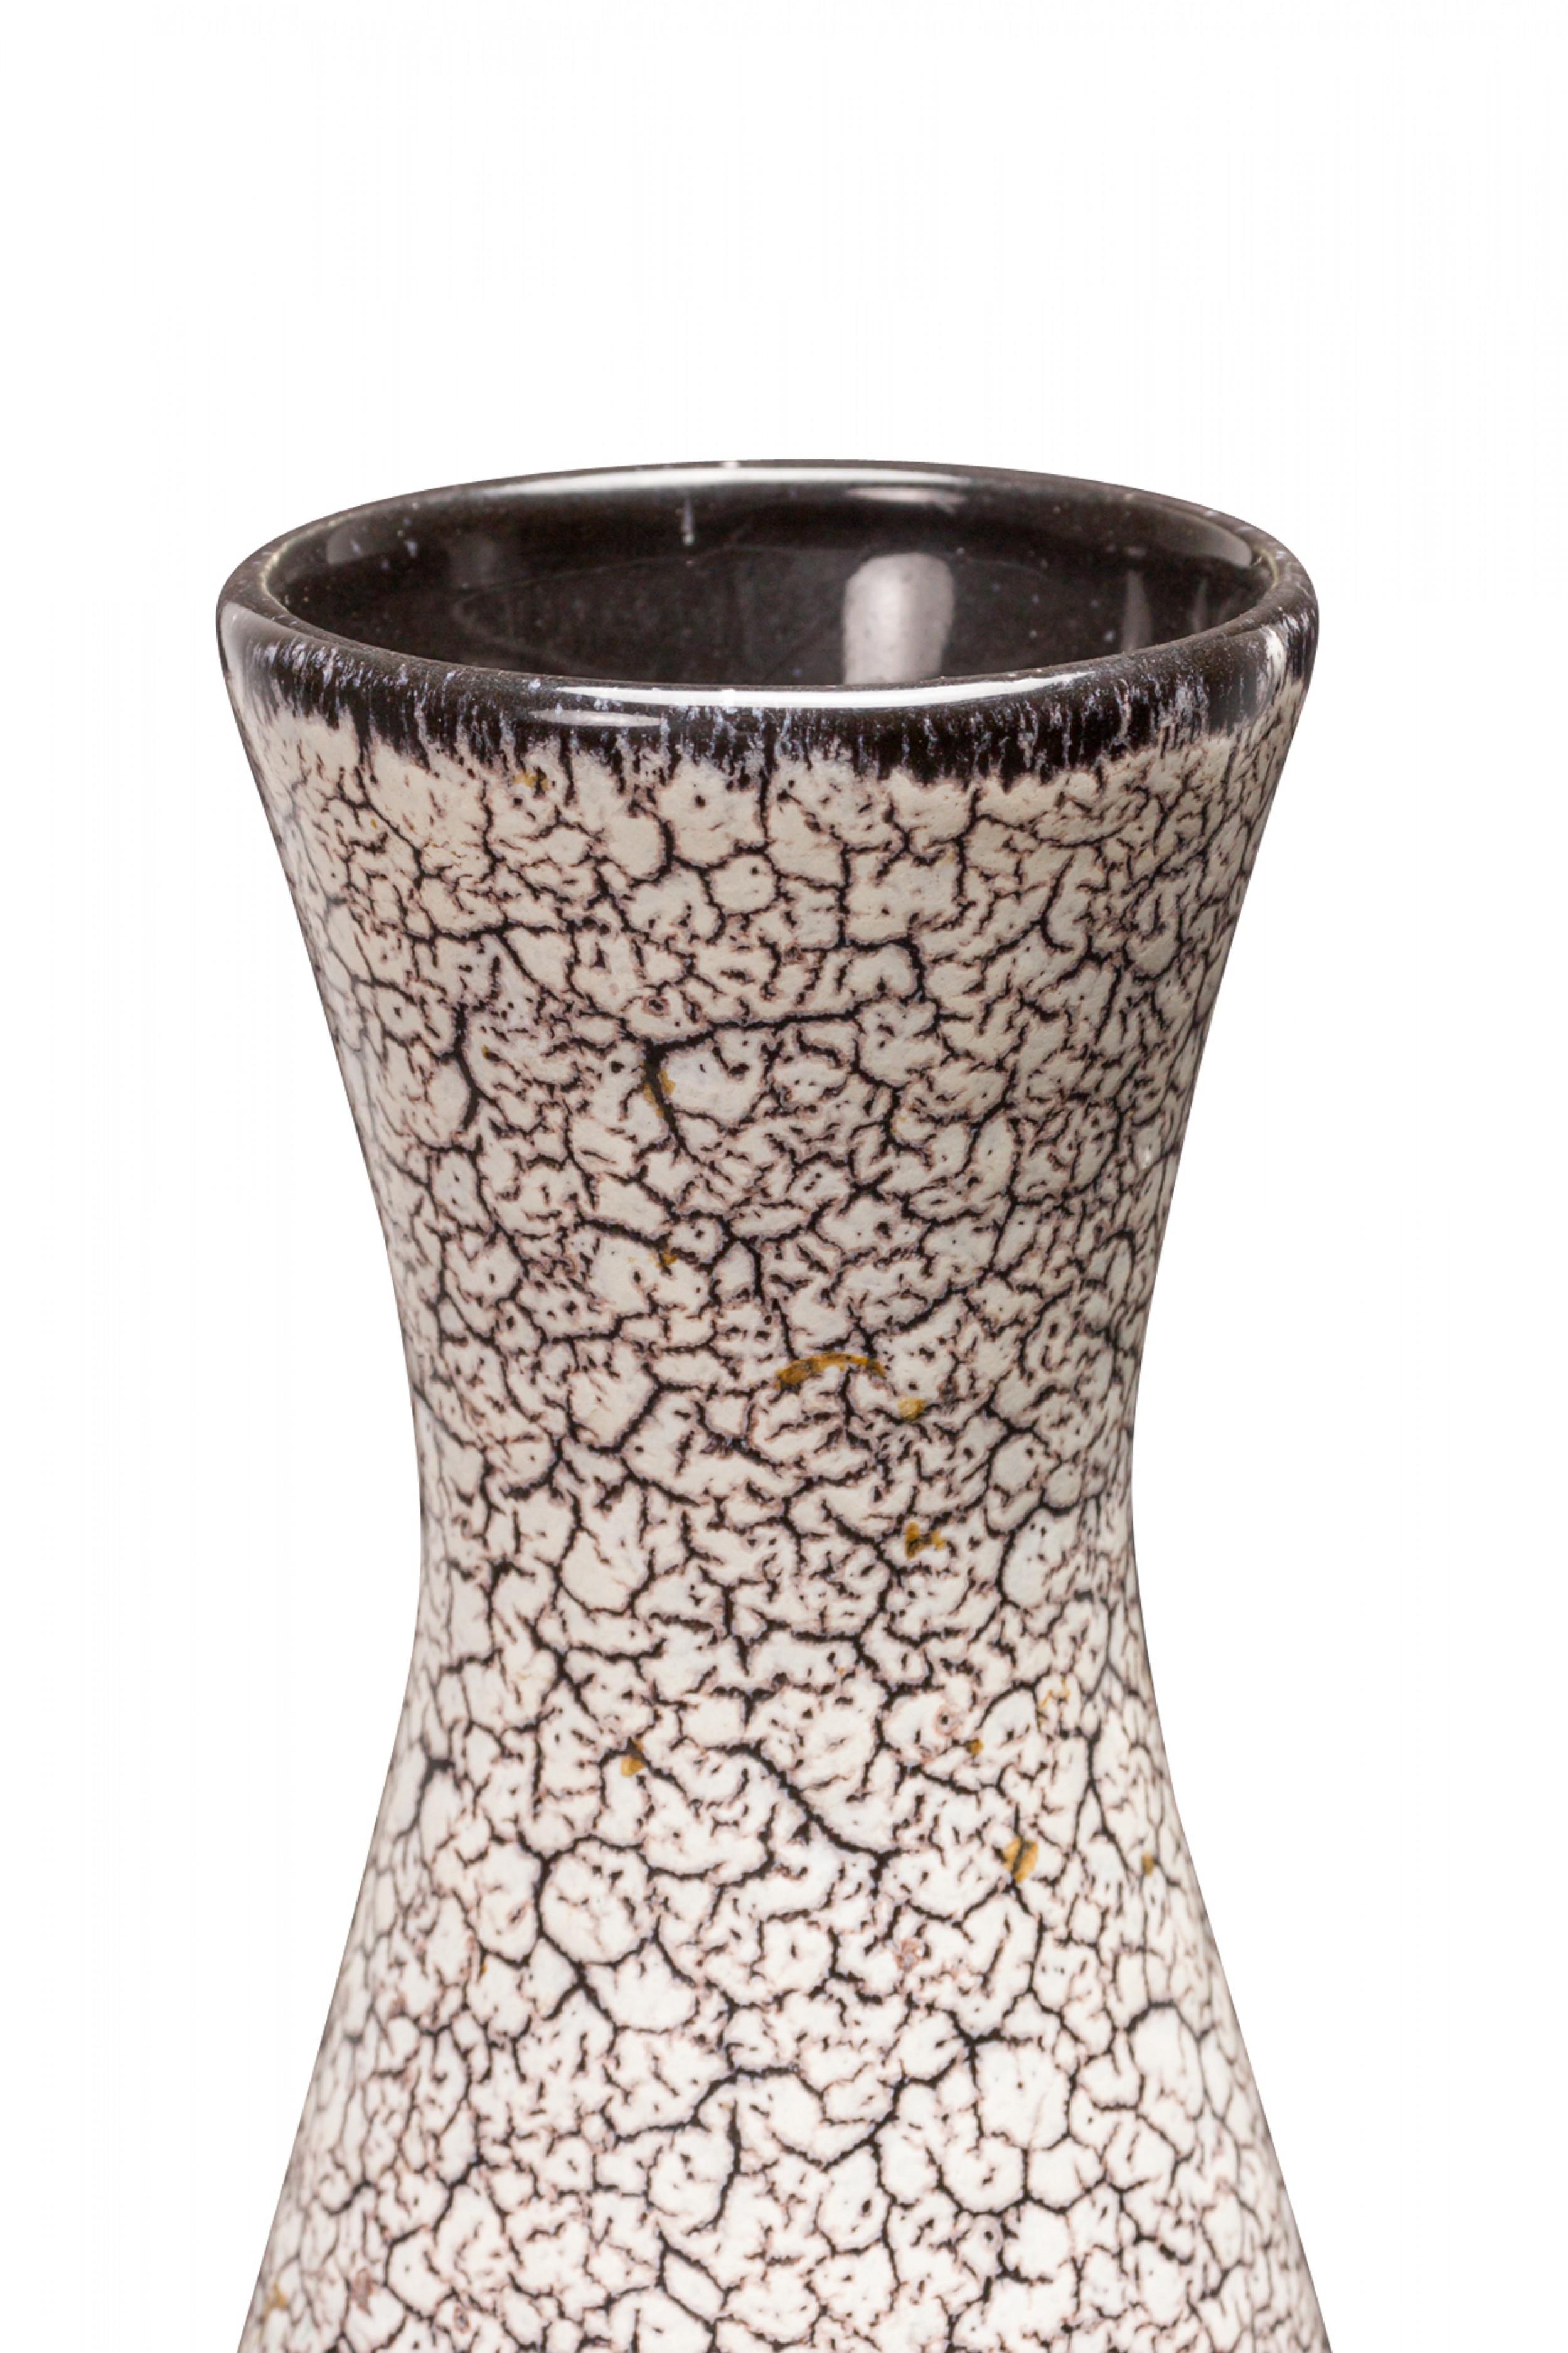 Vase allemand en céramique du milieu du siècle, de forme ronde en goutte d'eau se prolongeant par une bouche cannelée, avec un glaçage craquelé noir et blanc et un intérieur glacé noir. (étiquette sur le côté, JASBA KERAMIK).